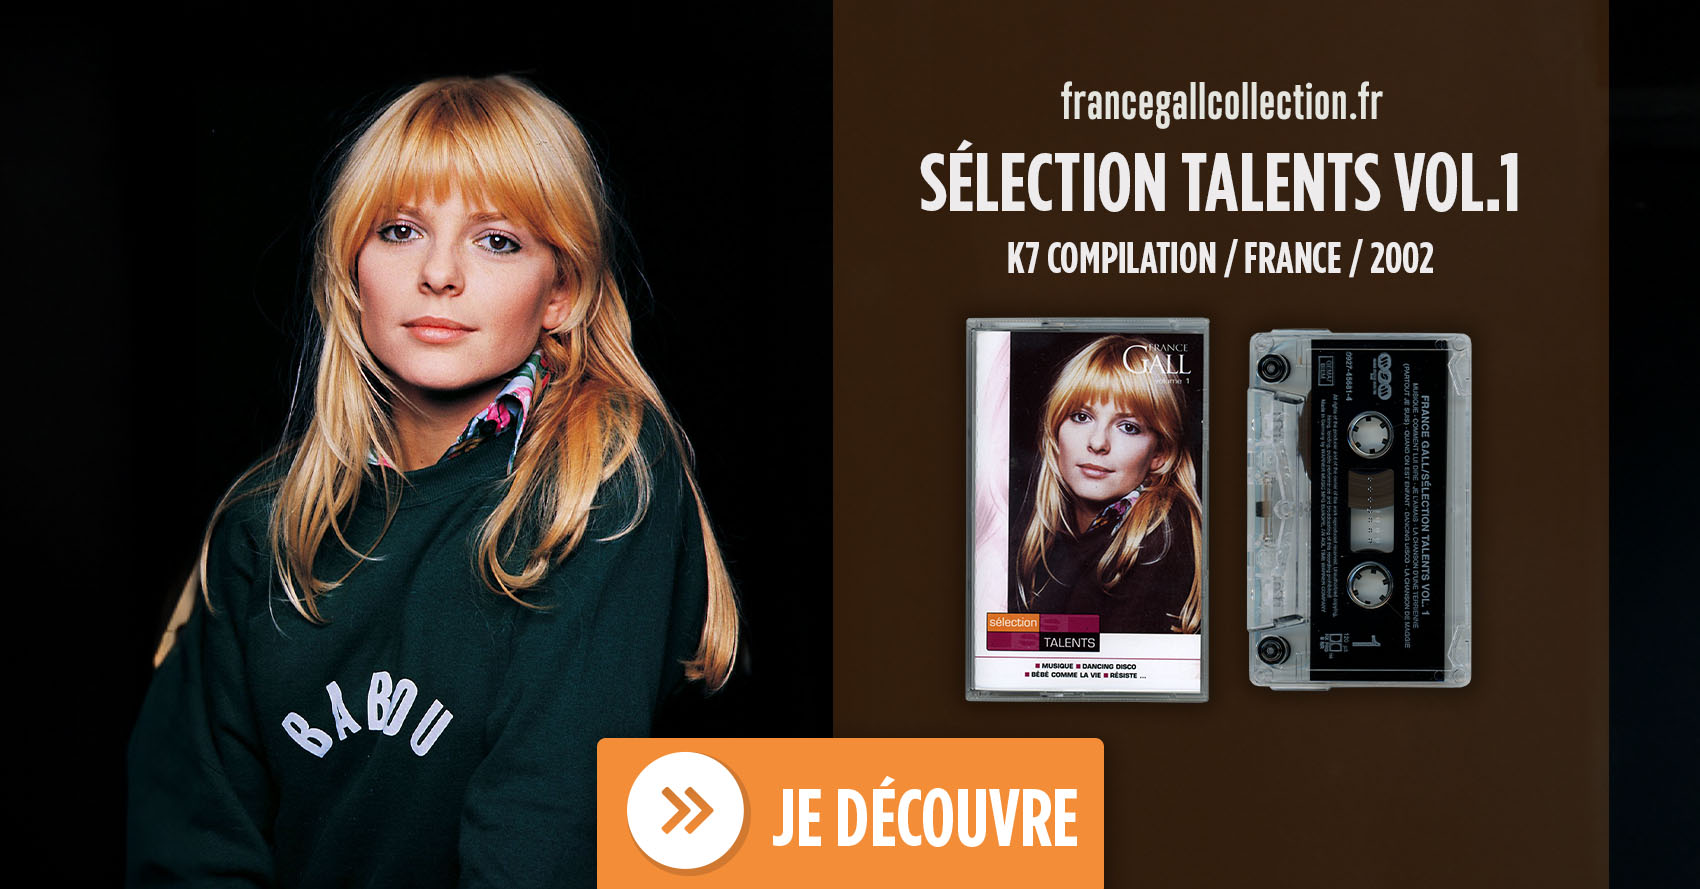 Compilation de France Gall au format K7 de la série Sélection talents qui regroupe 15 titres de France Gall édités entre 1975 et 1981.